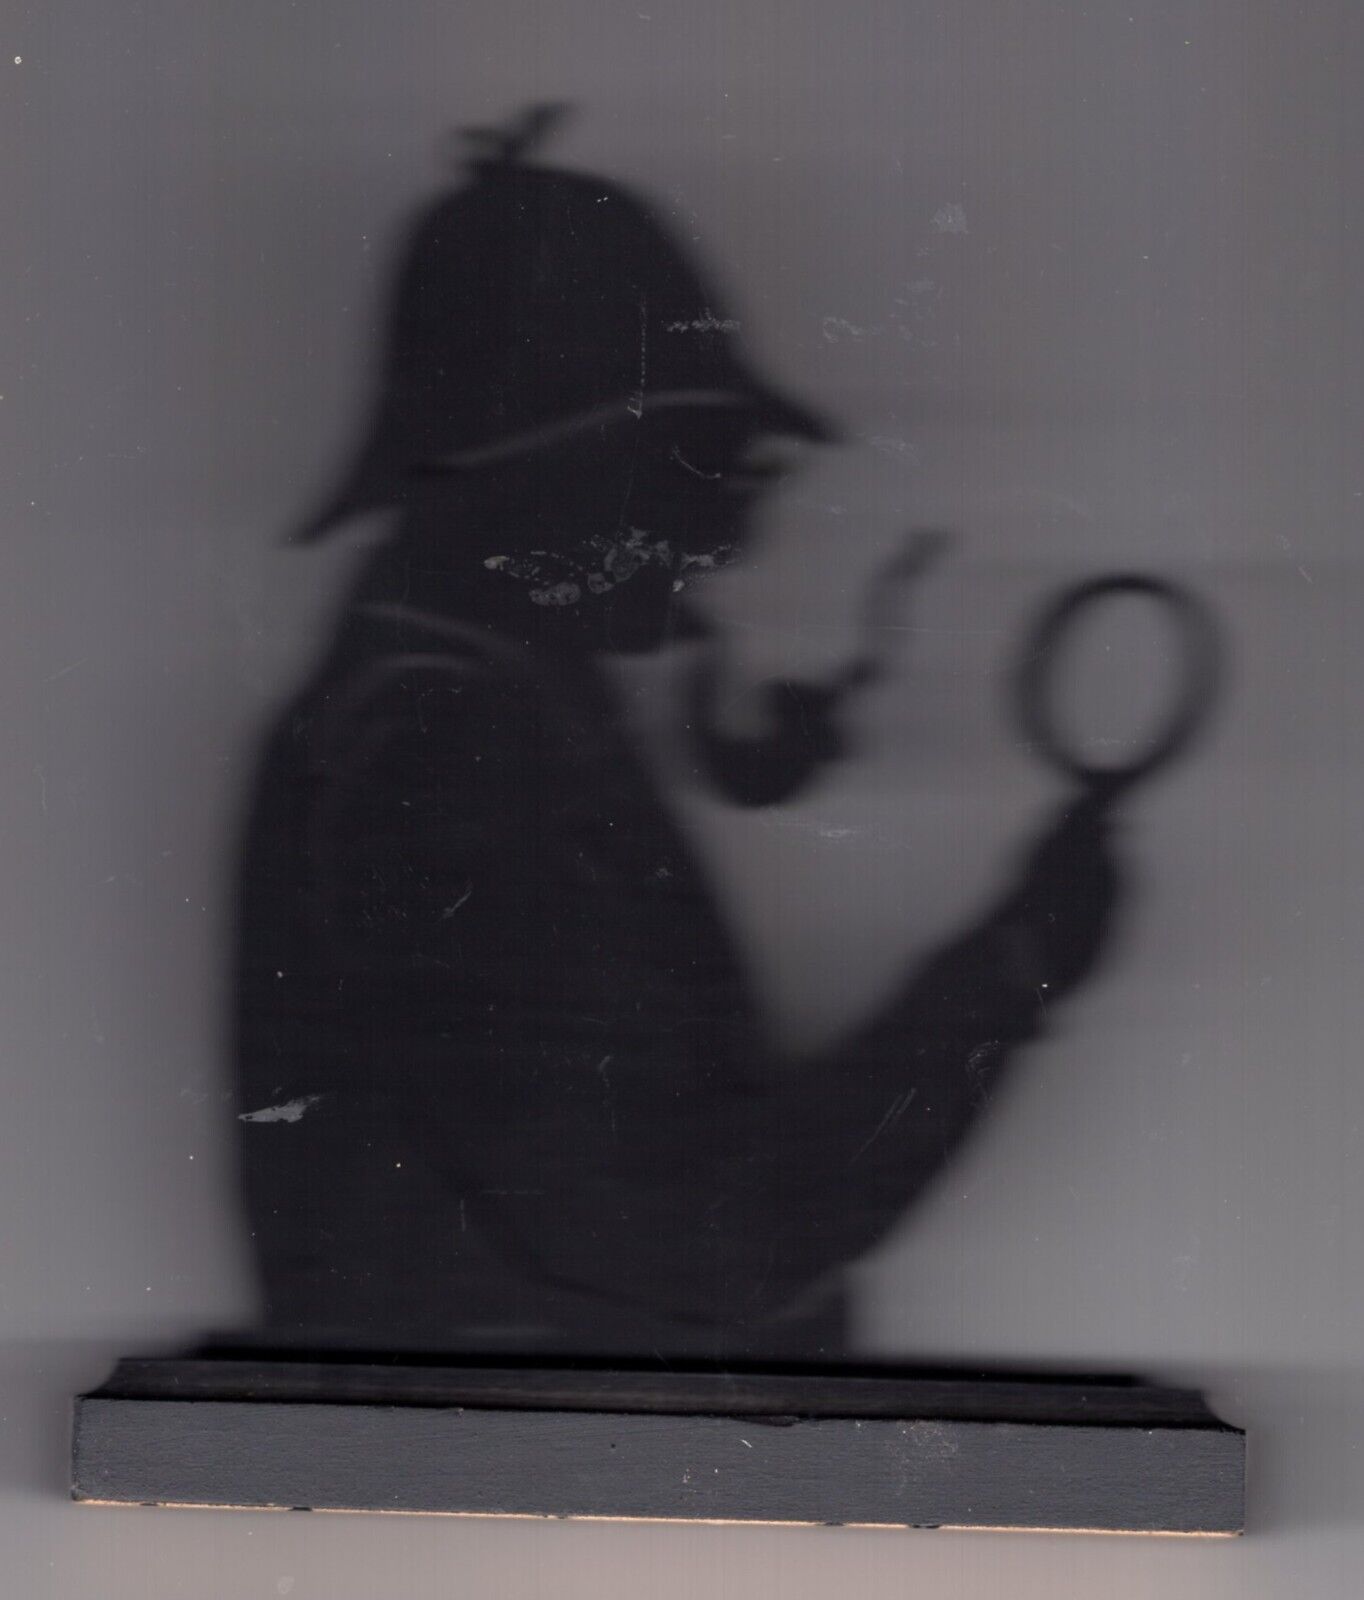 Sherlock Holmes silhouette